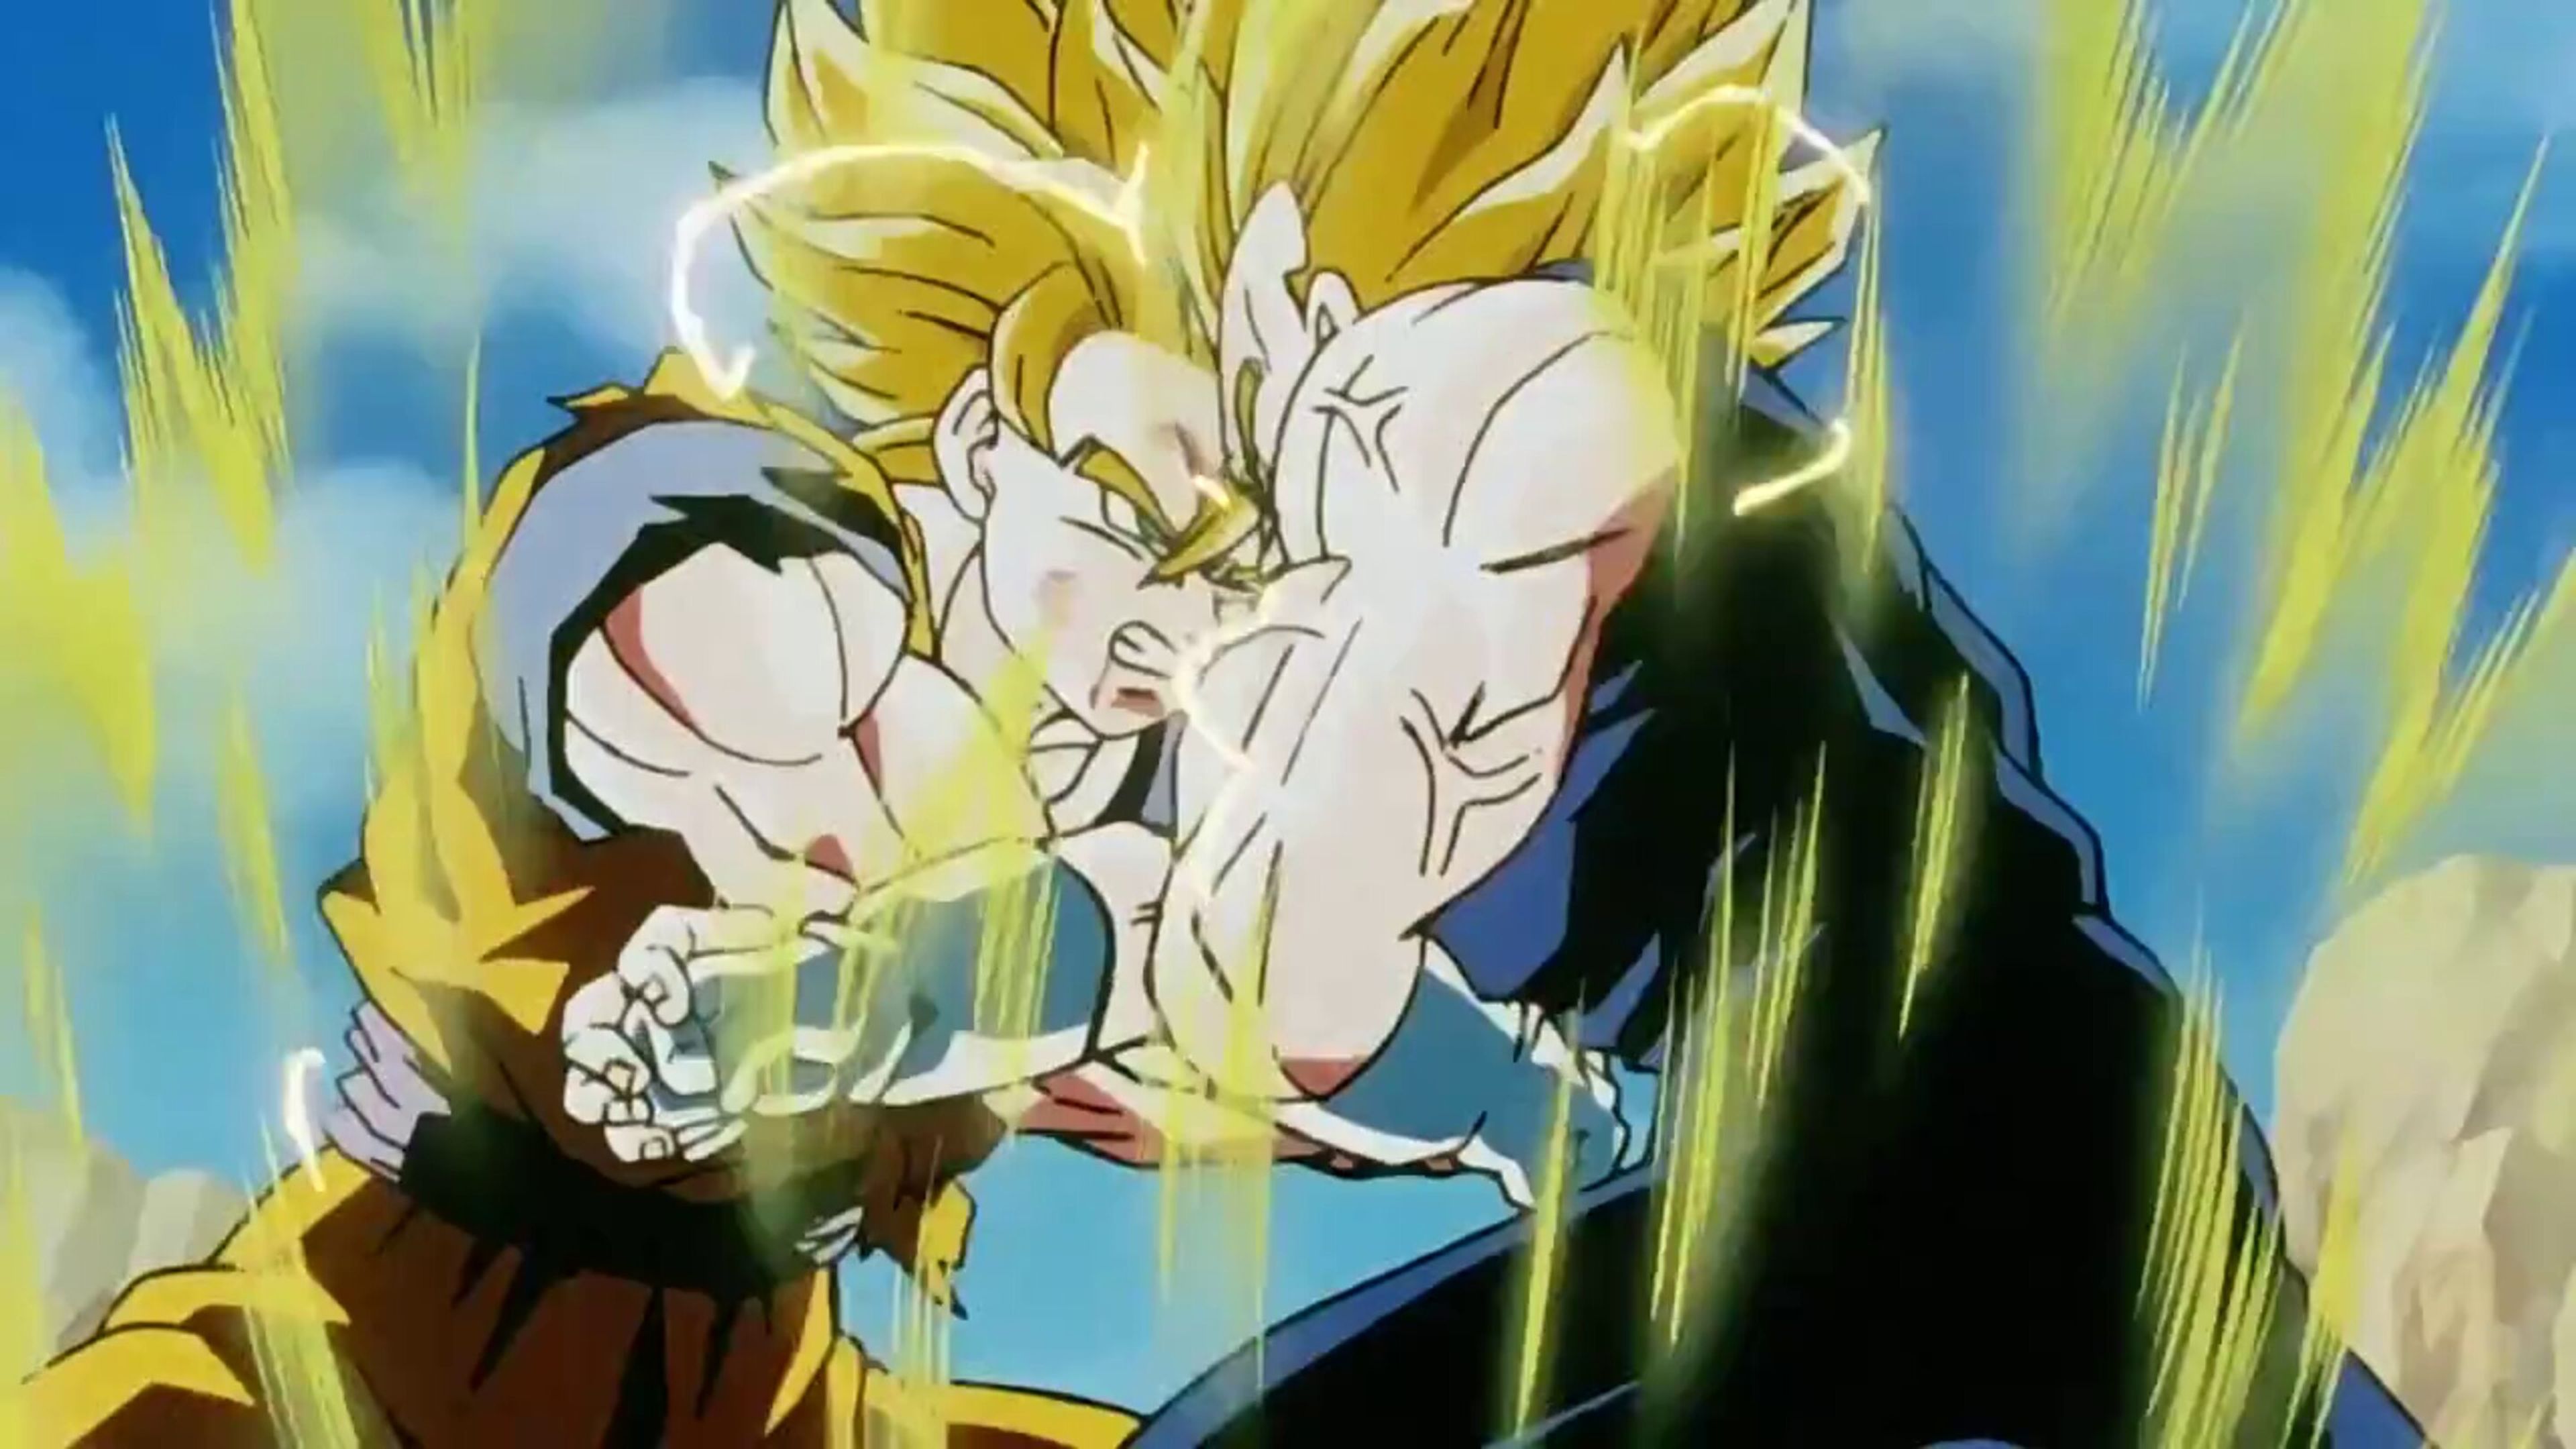 Toyotaro demuestra su calidad en Dragon Ball Super dibujando nuevas ilustraciones de Goku y Vegeta en pleno combate 